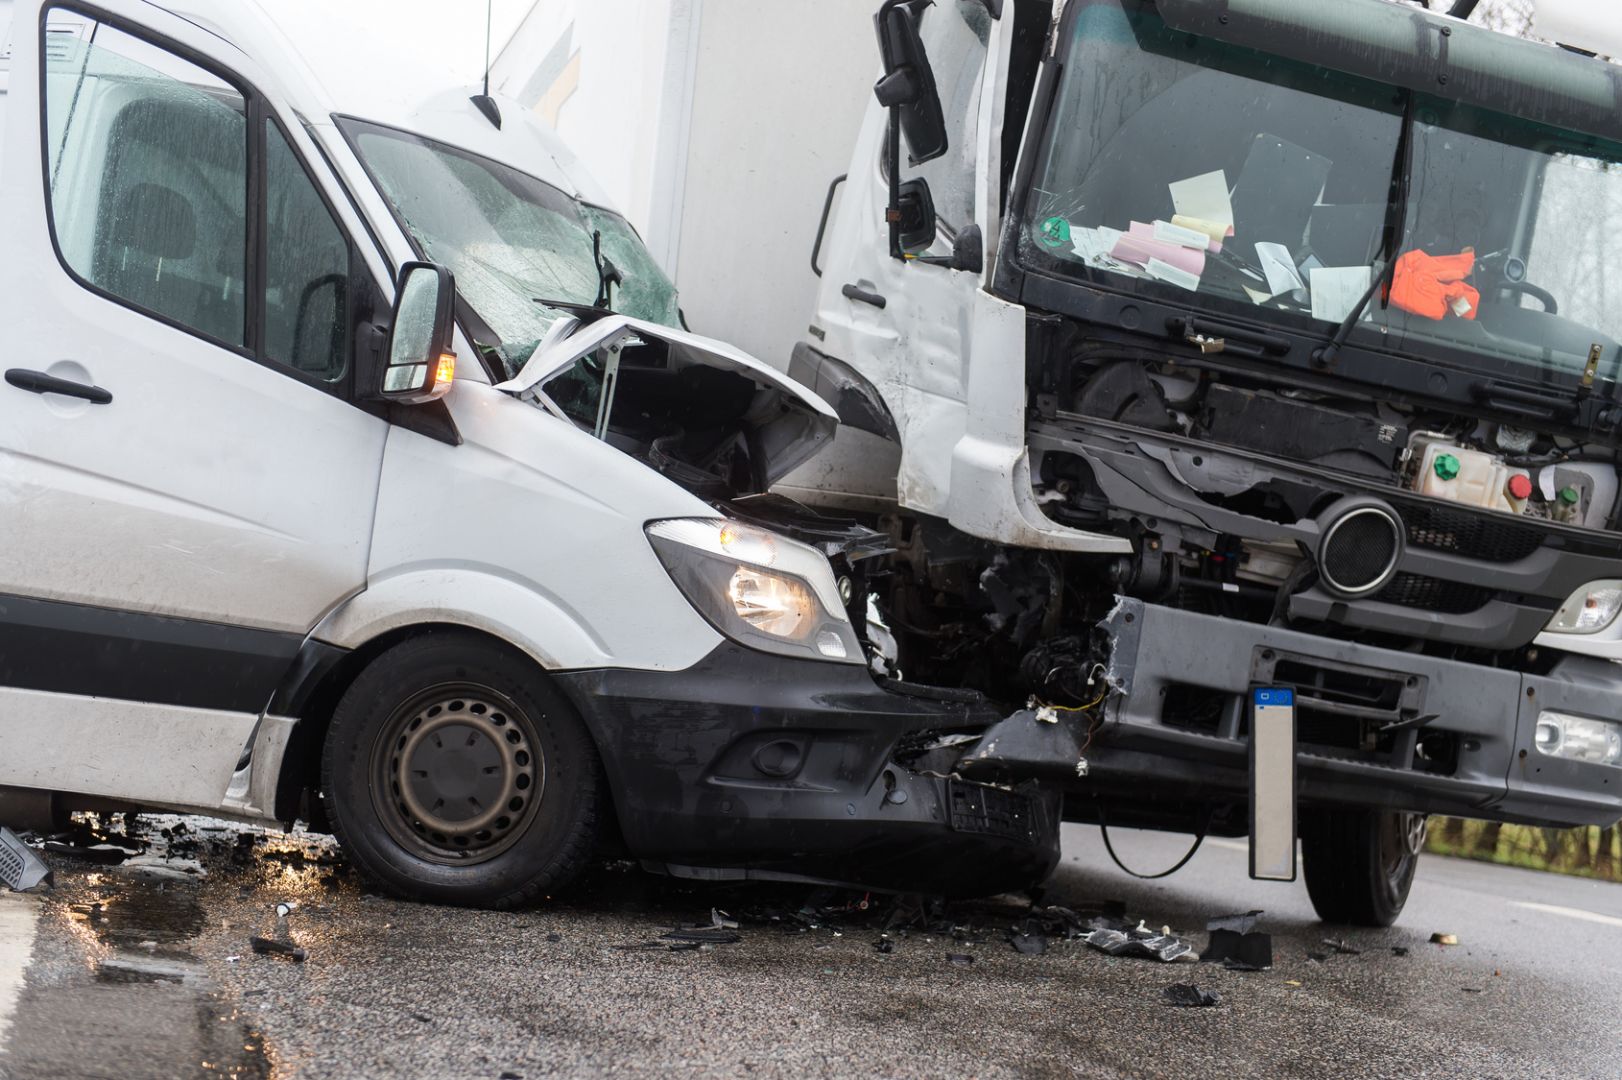 Wypadek samochodowy i odszkodowanie – jak walczyć o swoje